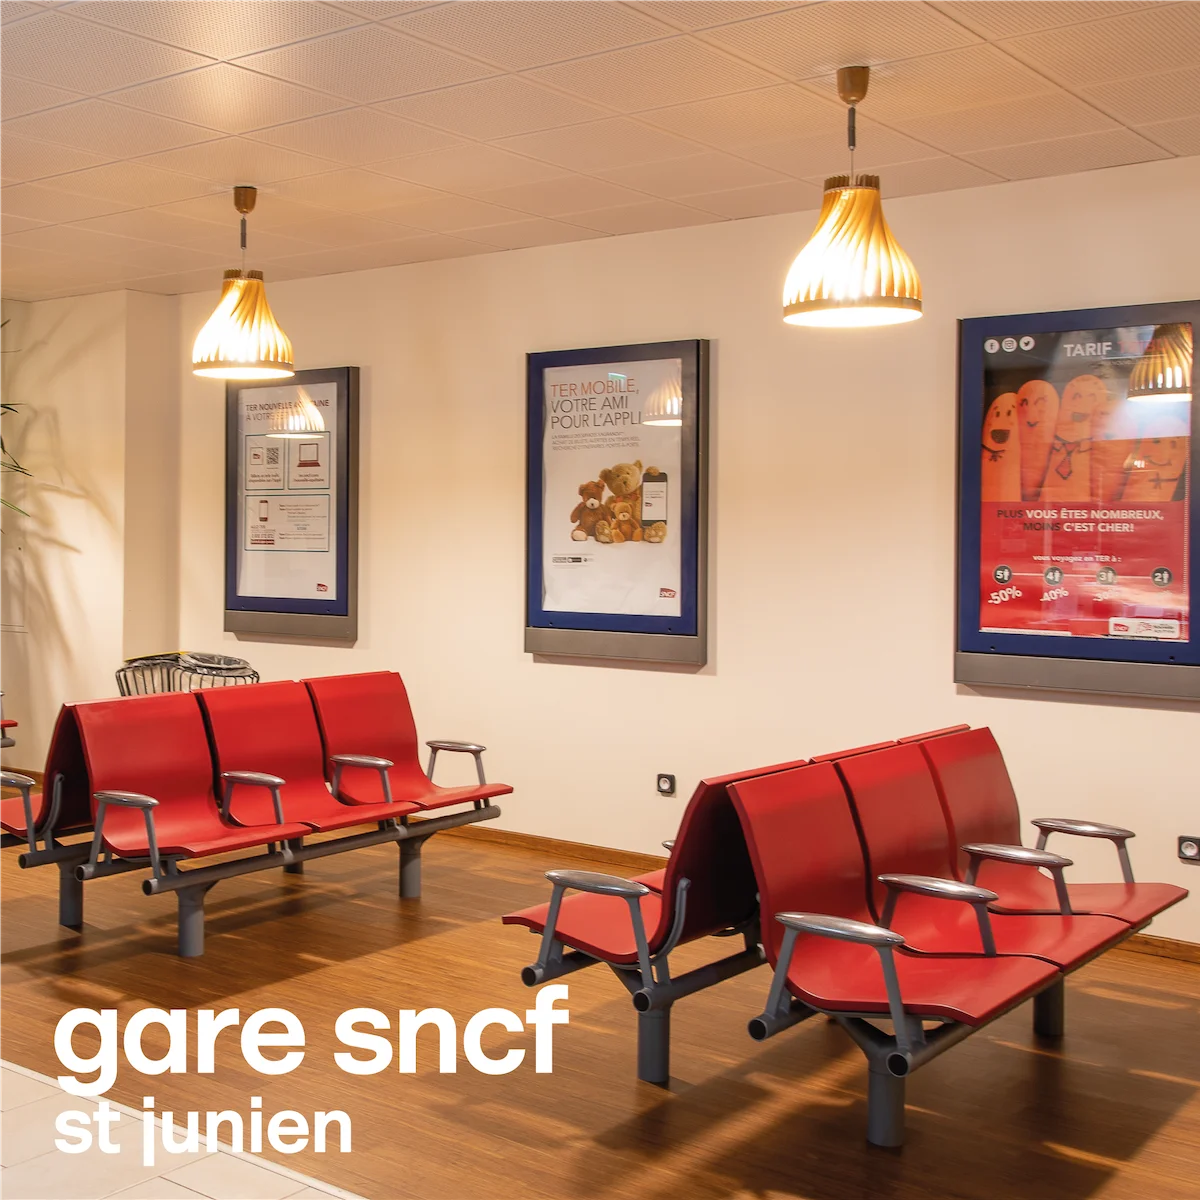 les suspensions en bois volupte M créent une ambiance reposante dans la salle d'attente de la gare SNCF de St Junien